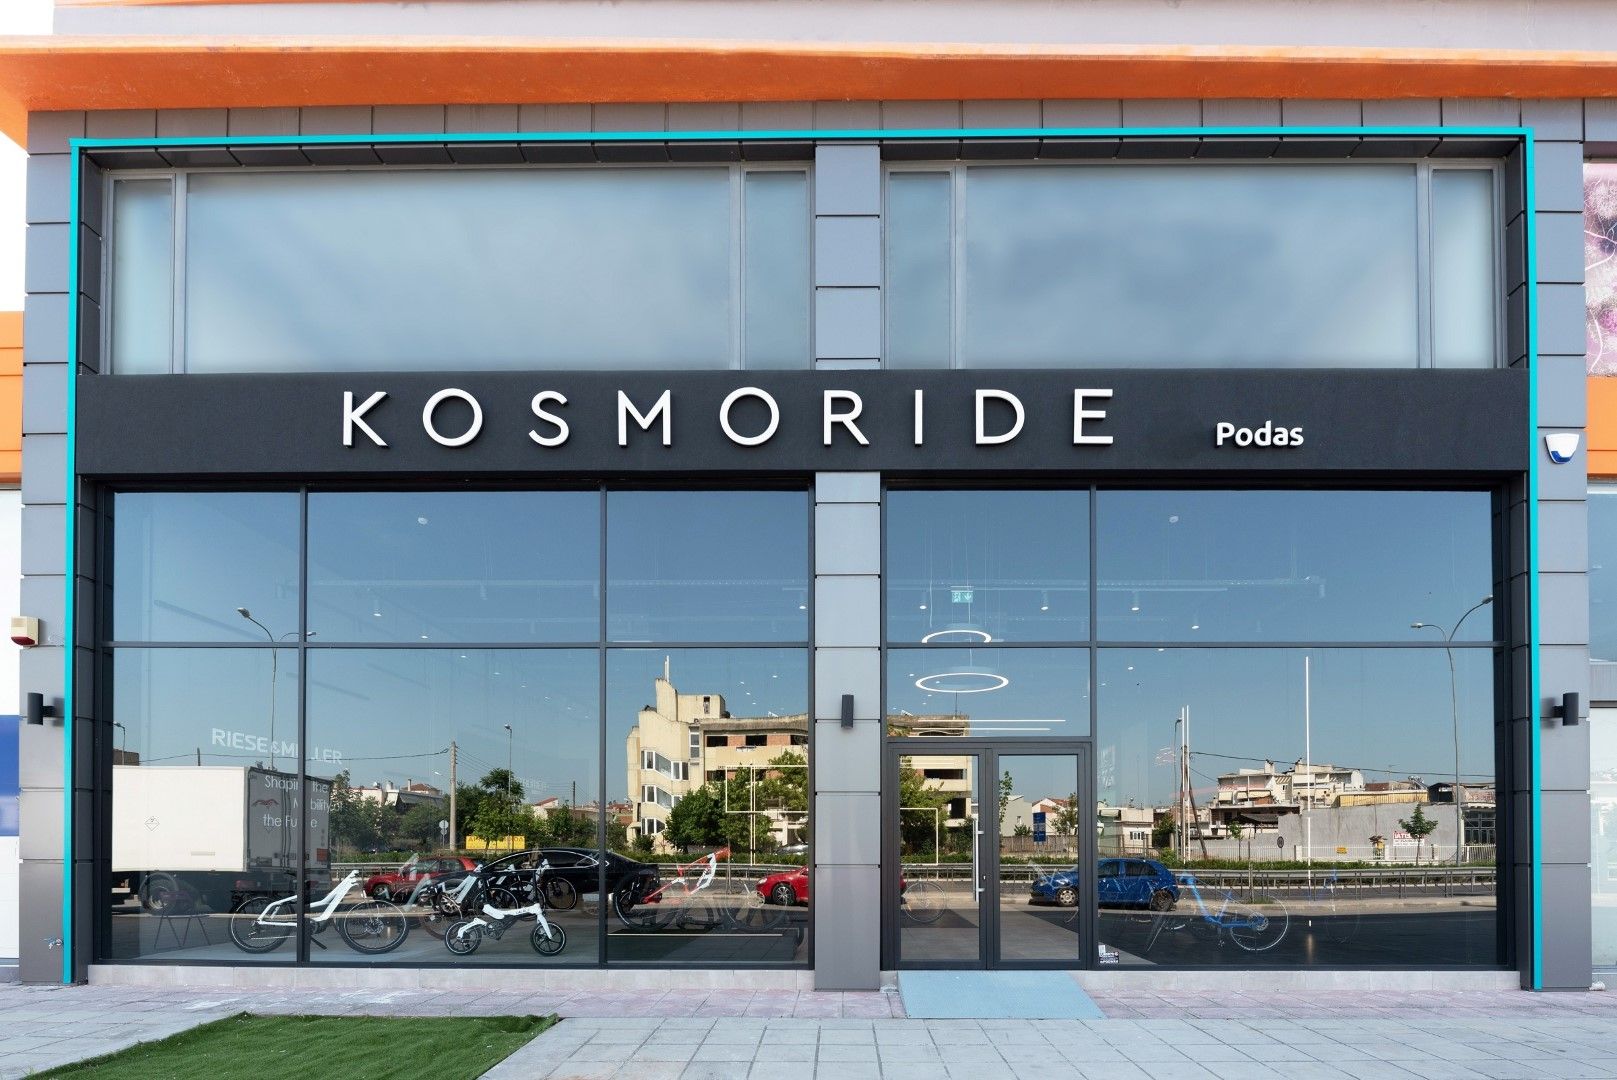 Τα e-Bikes της Kosmoride τώρα και στη Λάρισα!